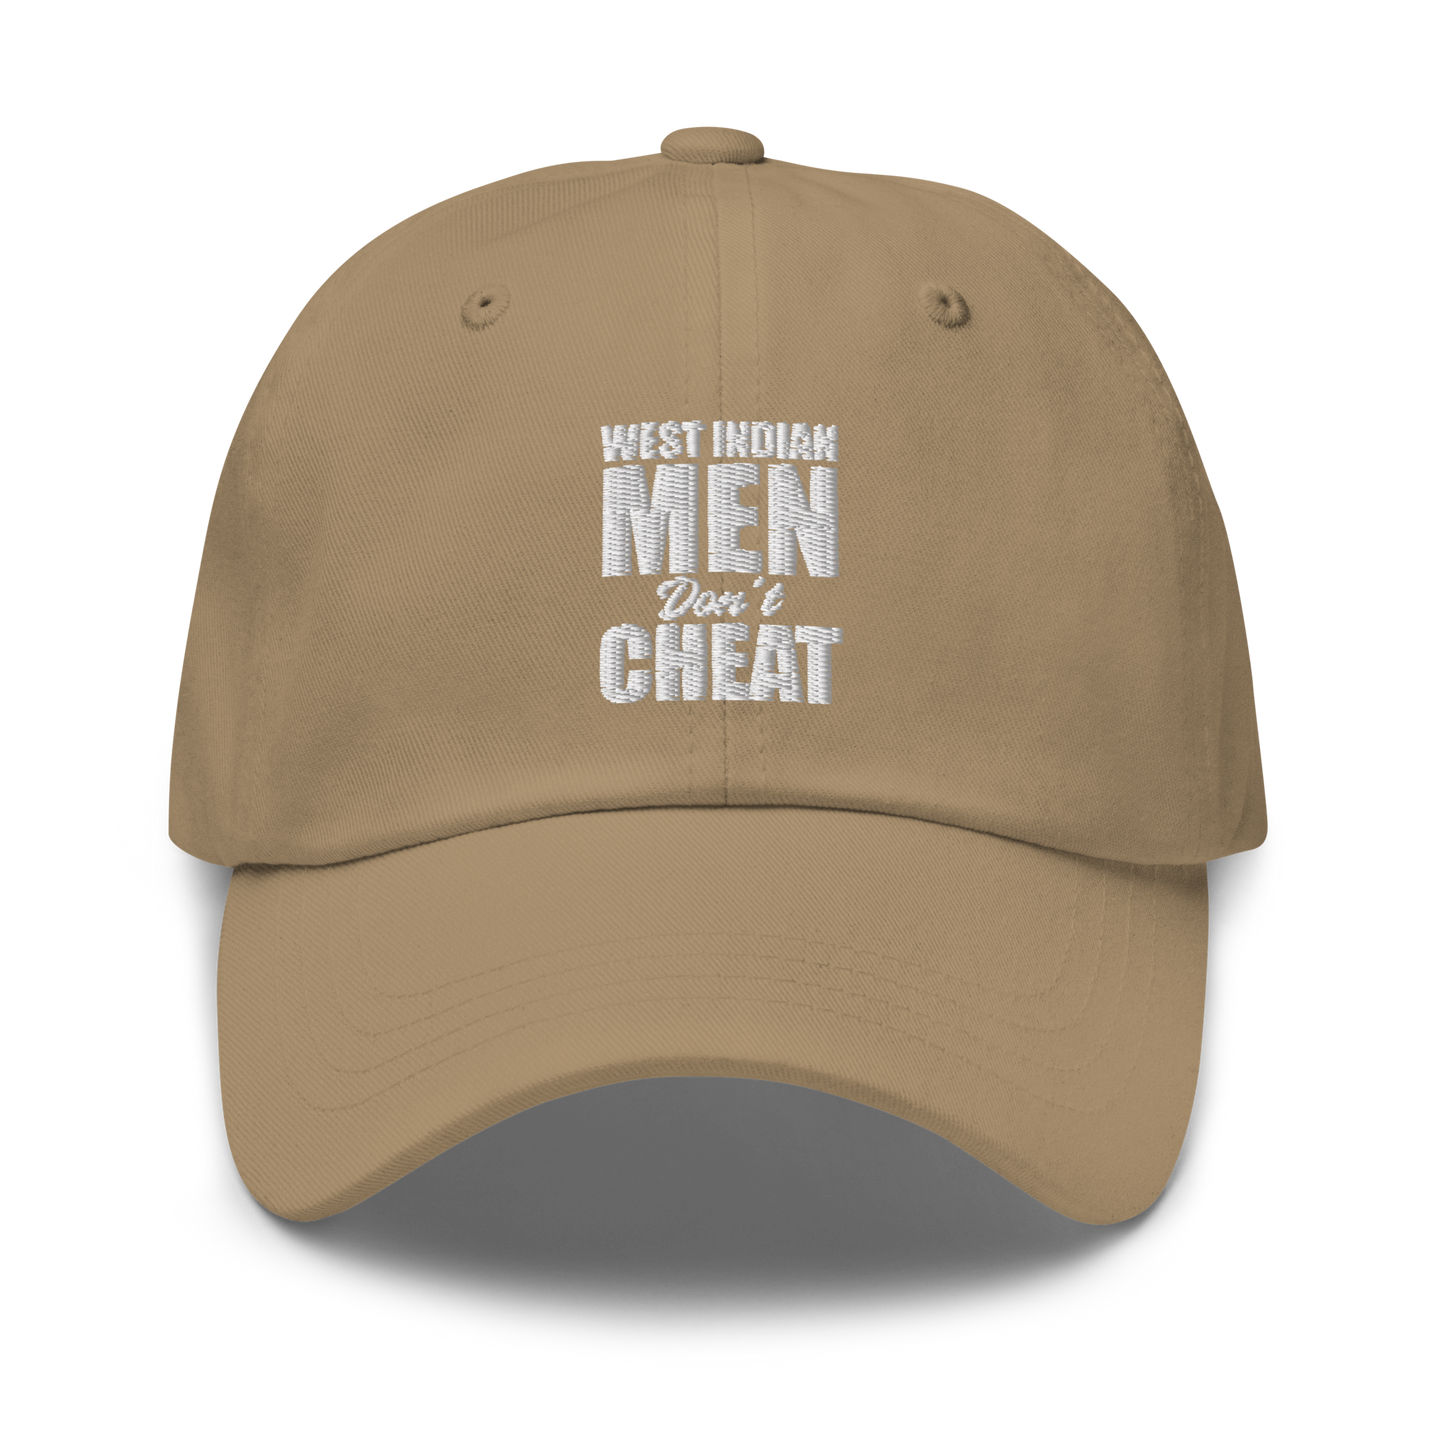 West Indian Men Don't Cheat Dad hat